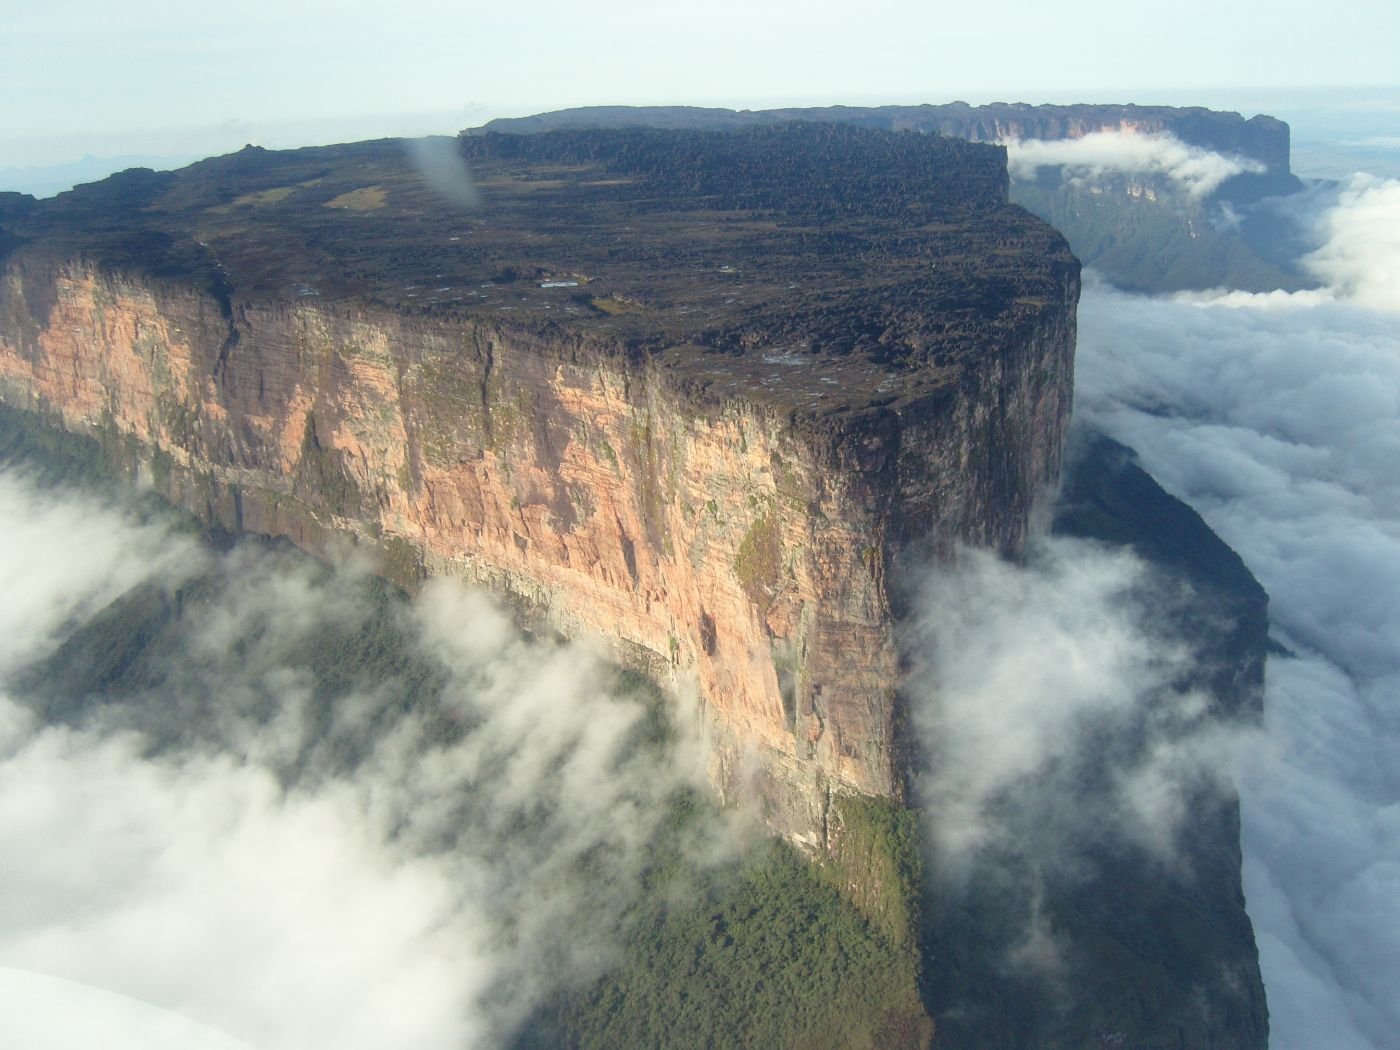 Самый высокий водопад гвианском плоскогорье. Столовая гора Рорайма в Венесуэле. Плоская гора Рорайма в Венесуэле. Венесуэла плато Тепуи. Плато Рорайма, Бразилия, Венесуэла, Гайана.